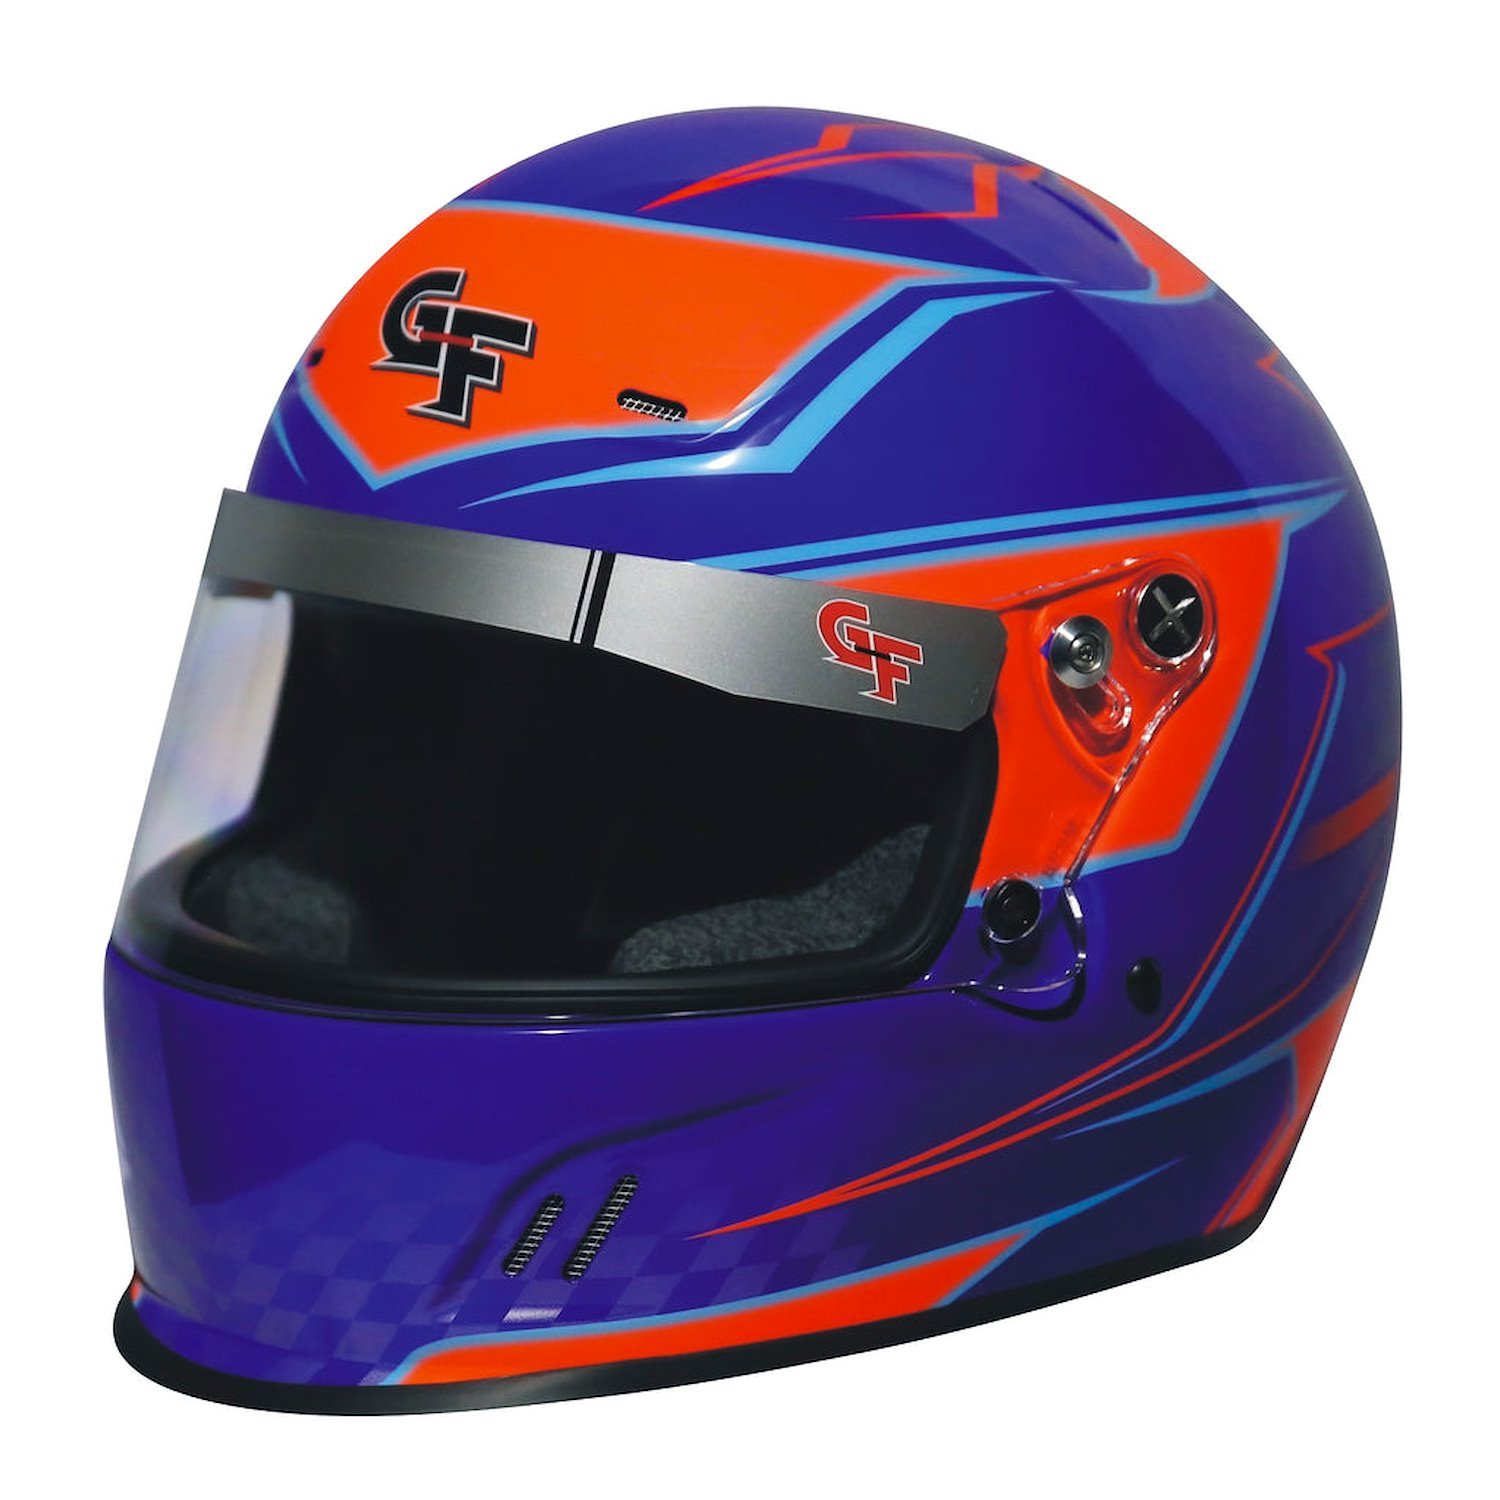 13402MEDBU Helmet, CMR Graphics, Medium, Blue/Orange